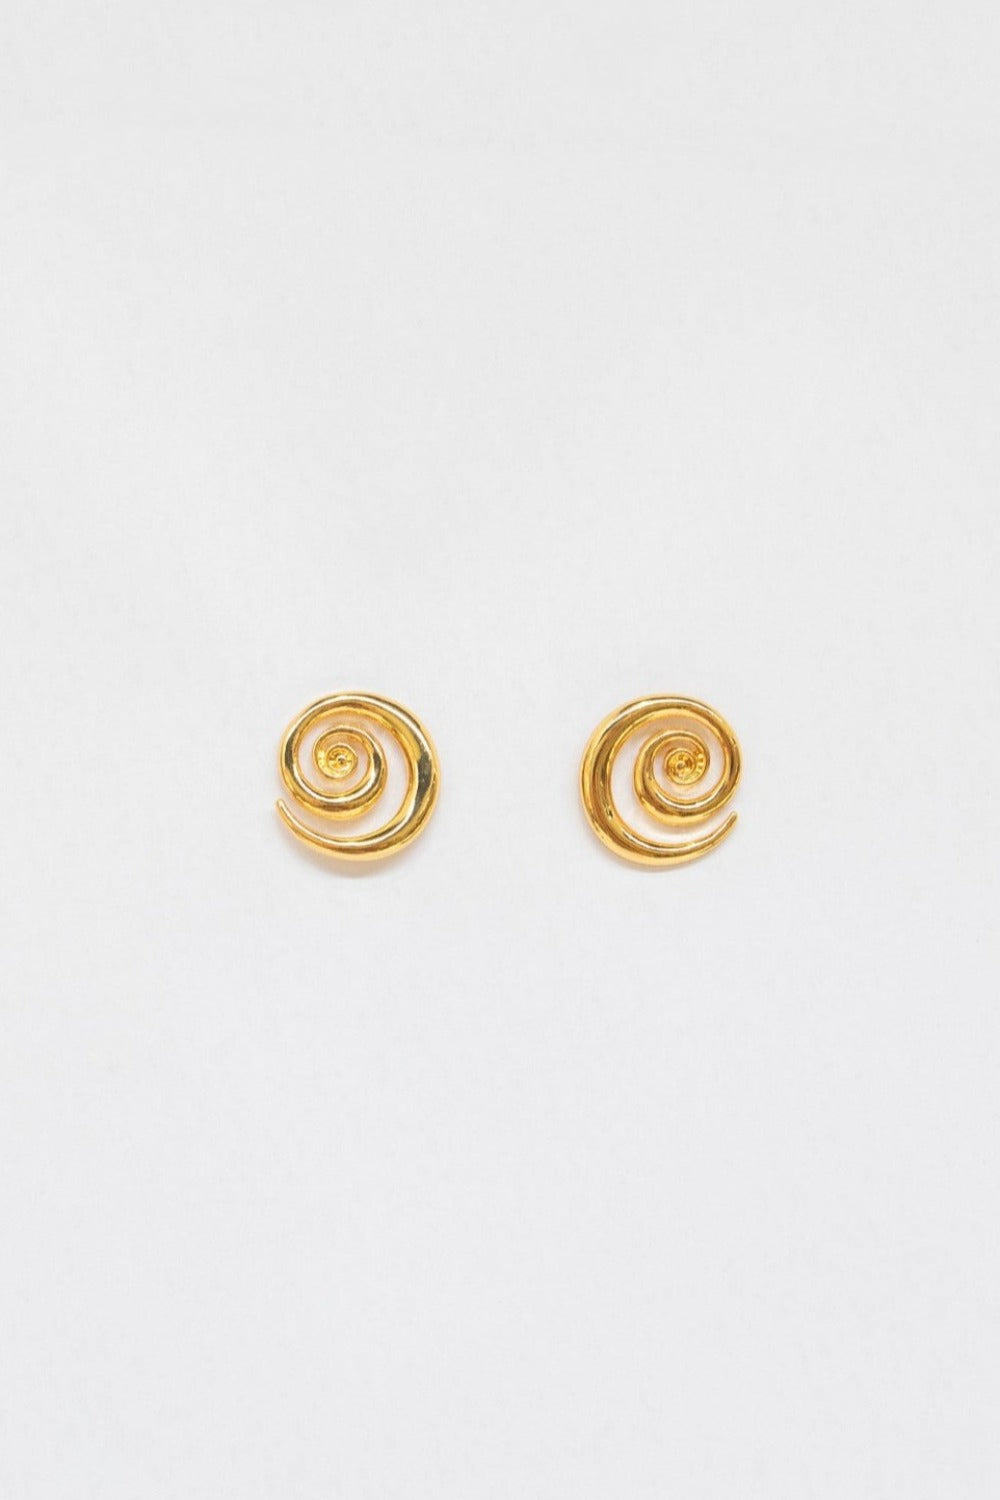 Mira Swirl Earrings Gold